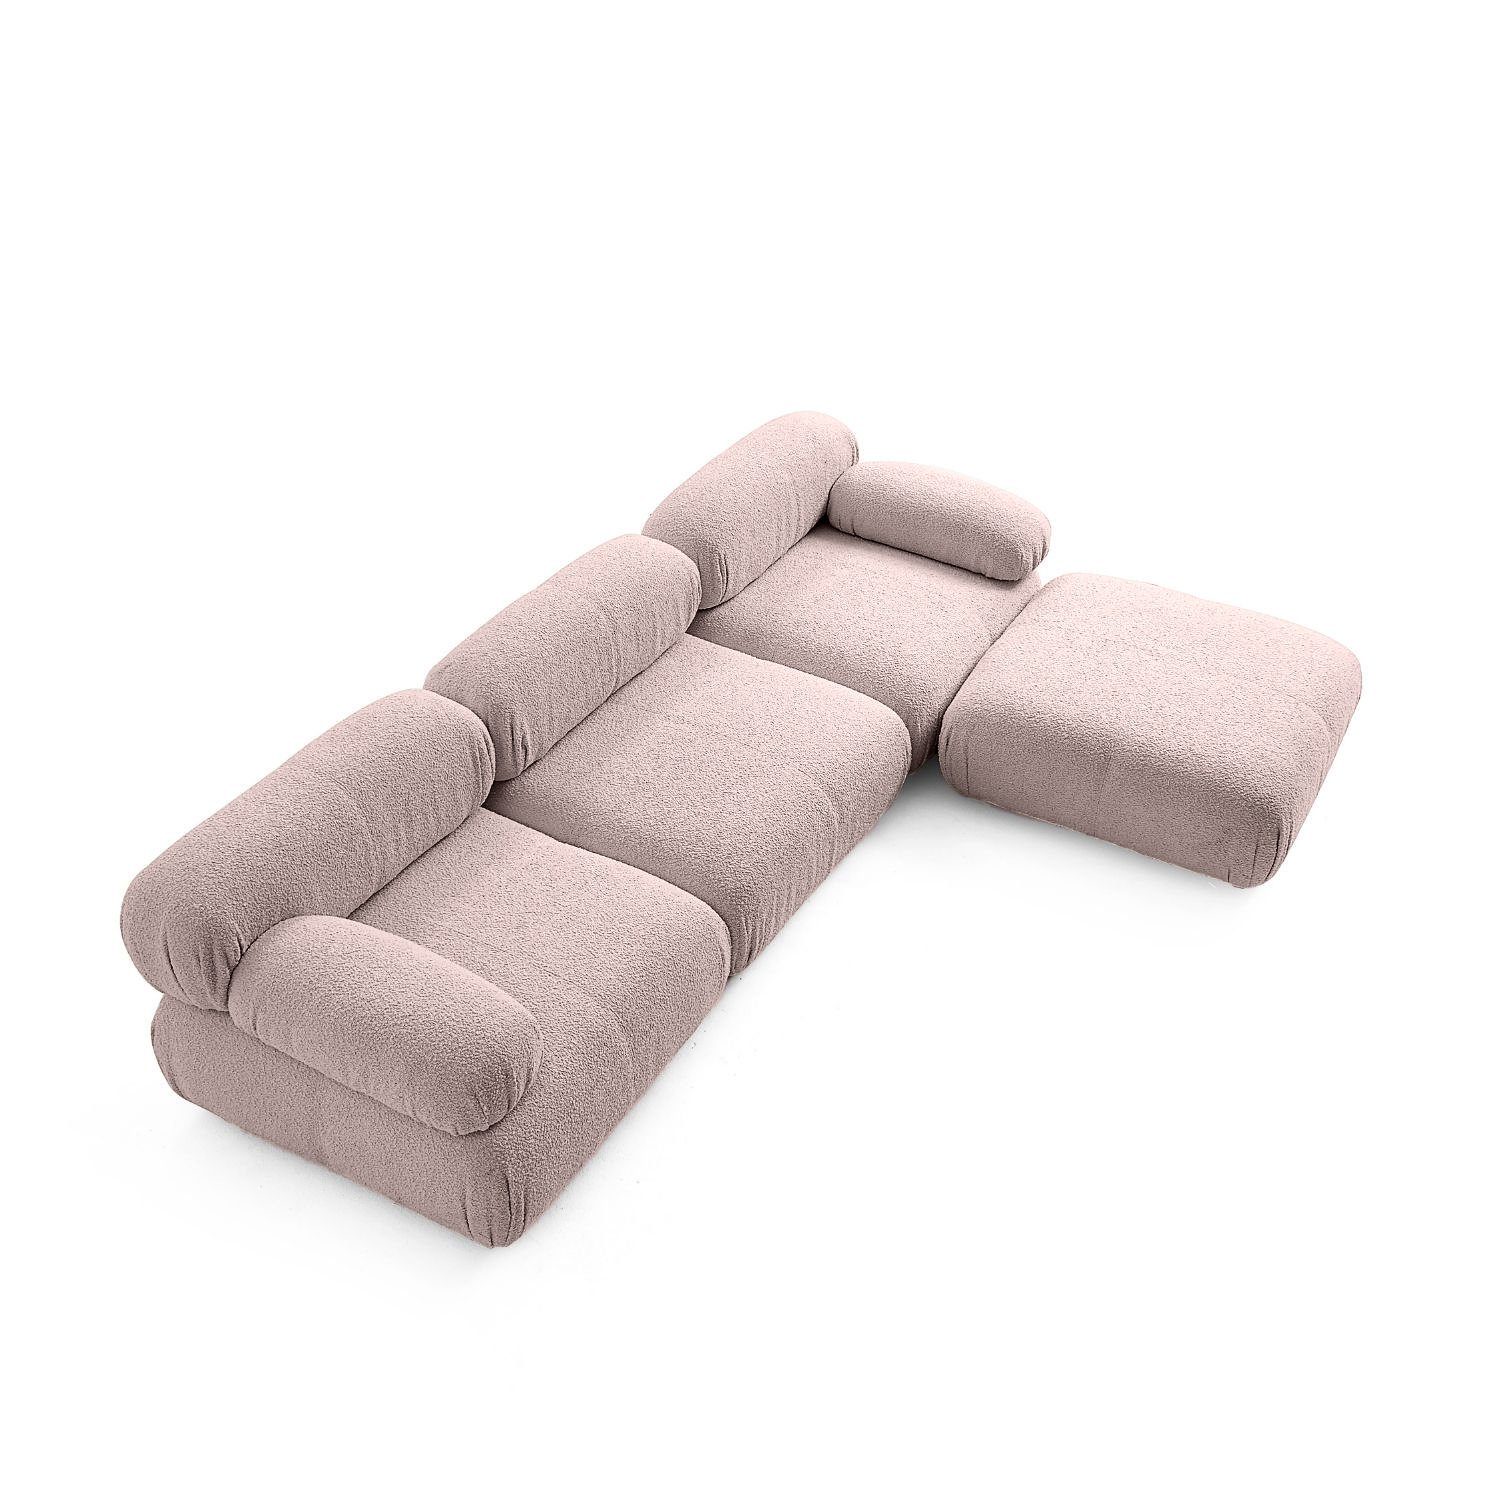 Komfortschaum enthalten! Sofa Aufbau Sitzmöbel aus Knuffiges und im Preis Touch neueste Hellrosa-Lieferung me Generation